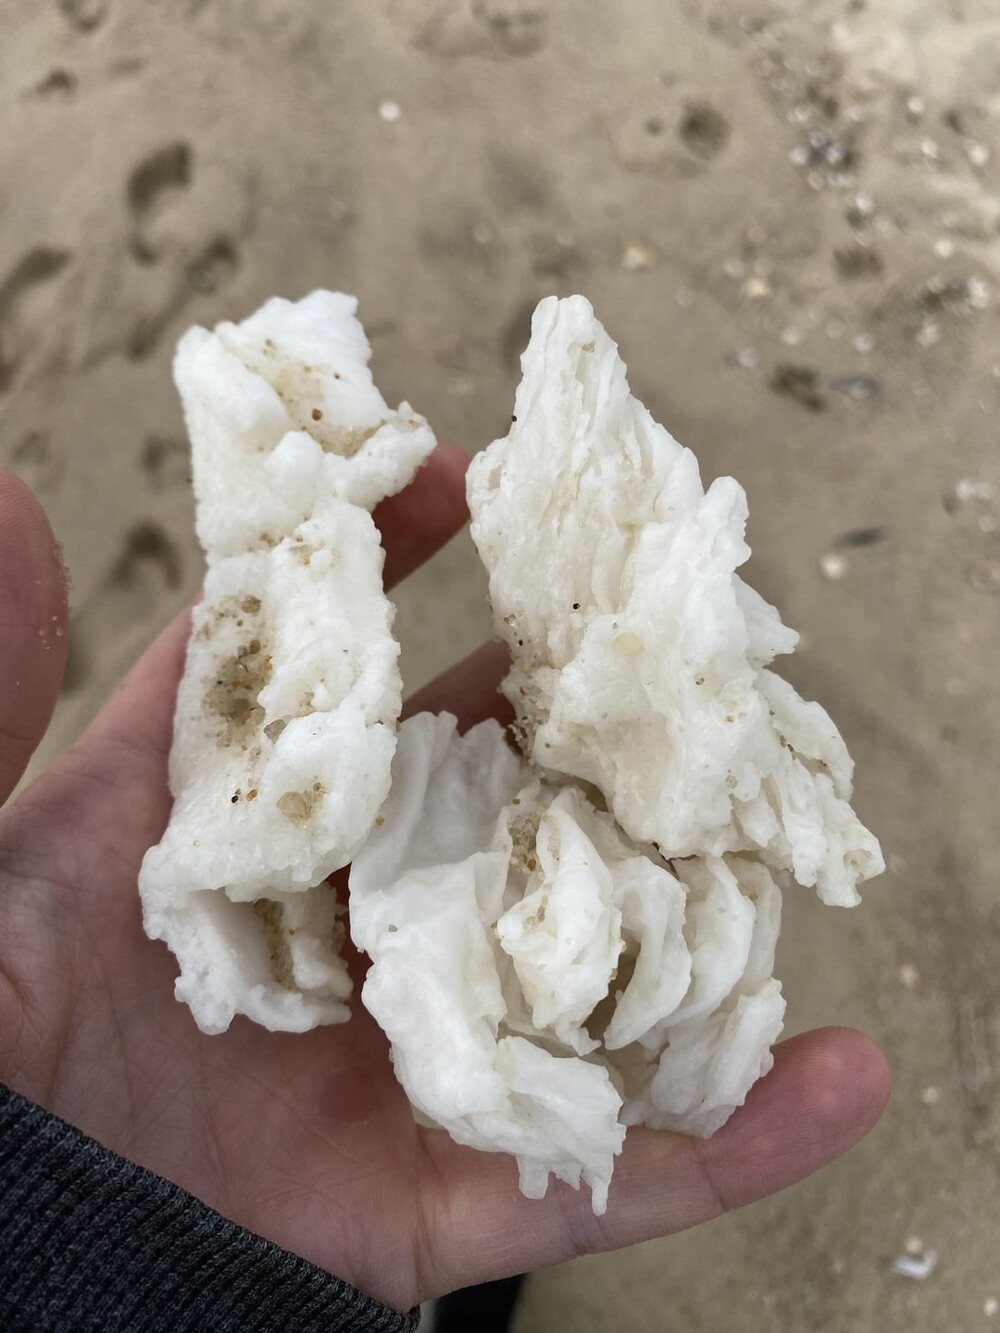 3. Белое твердое вещество, выброшенное на берег на пляже